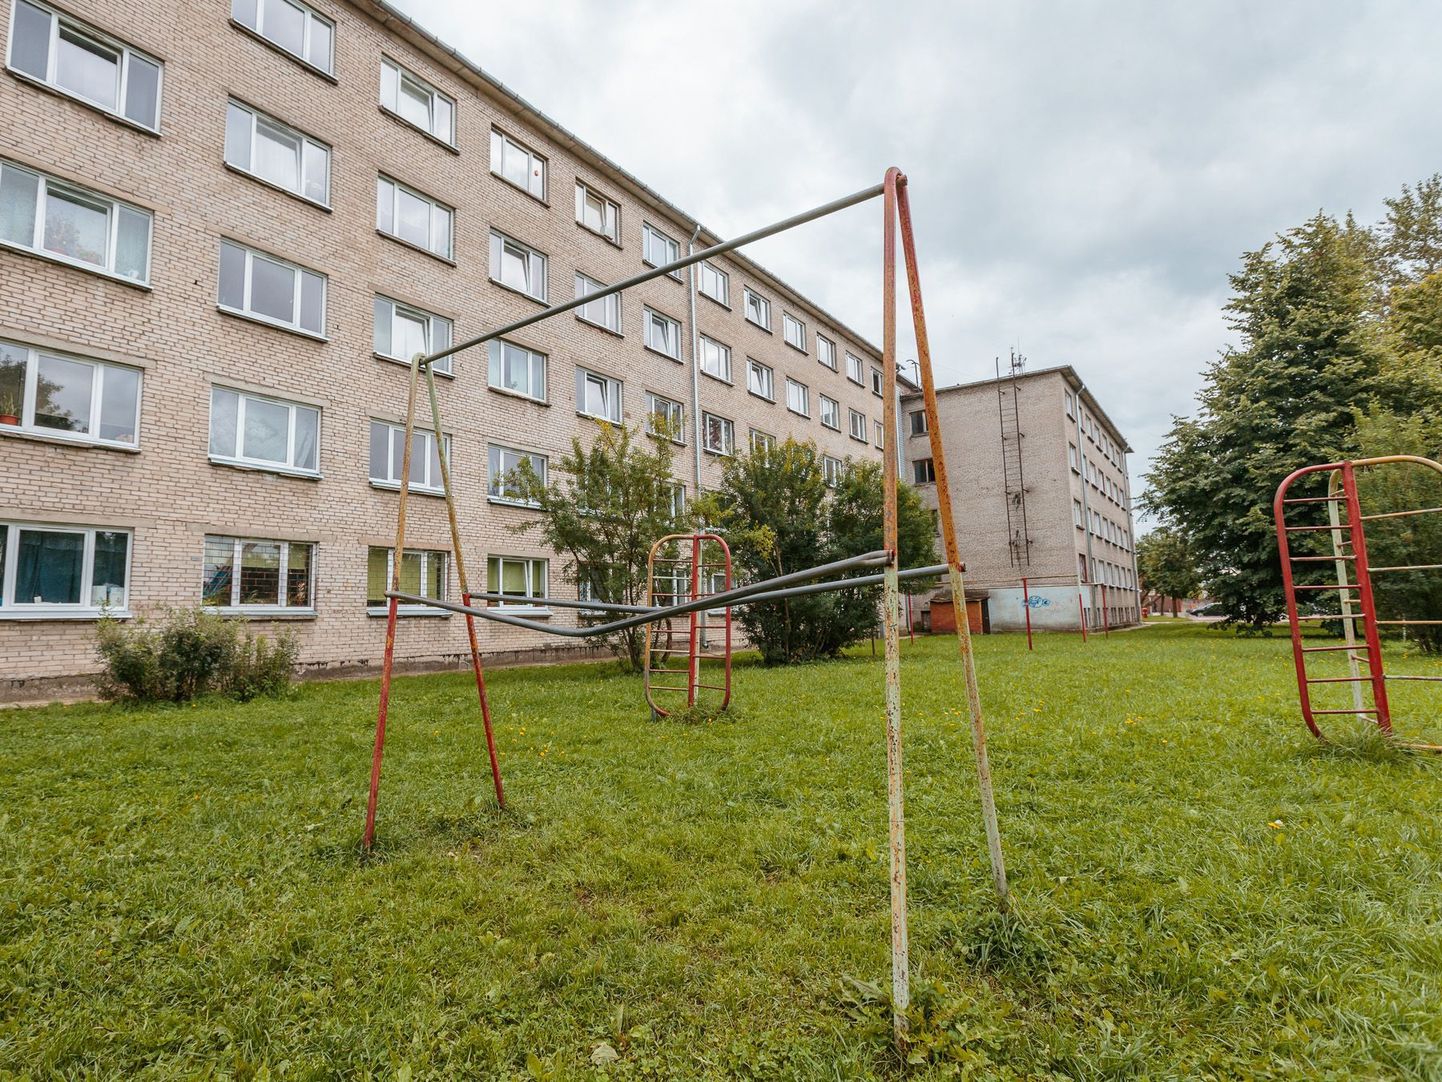 Труп женщины обнаружили во дворе нарвского общежития по улице Энергия, 6.